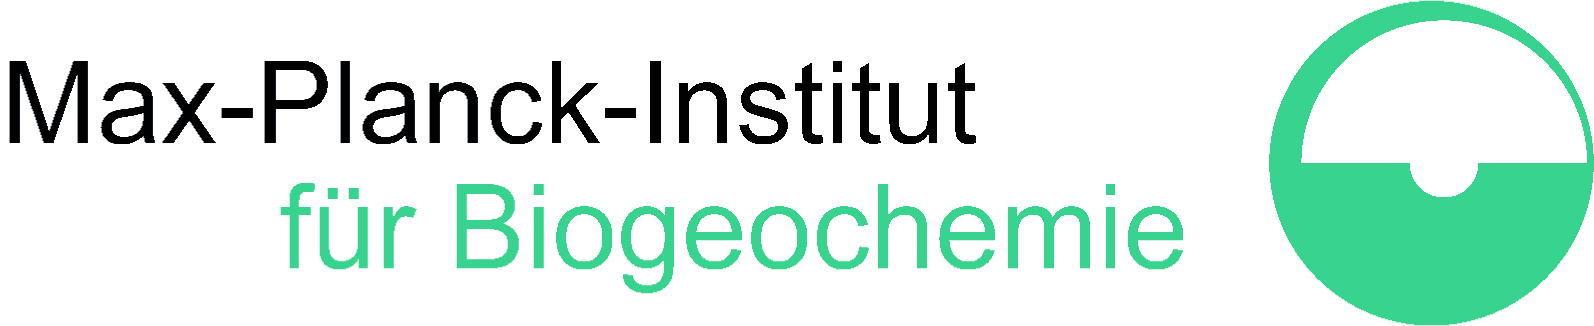 Logo: Max-Planck-Institut für Biogeochemie